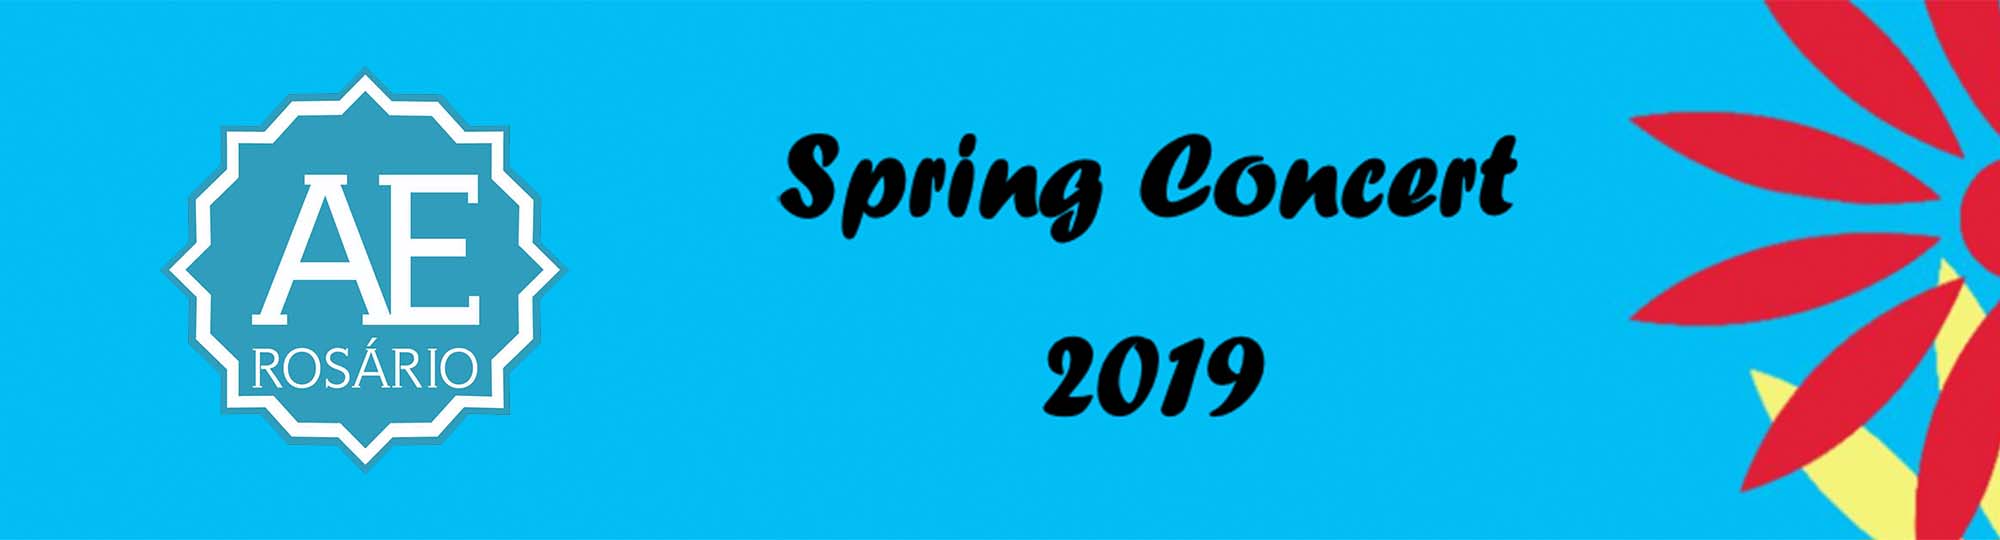 Spring Concert 2019
